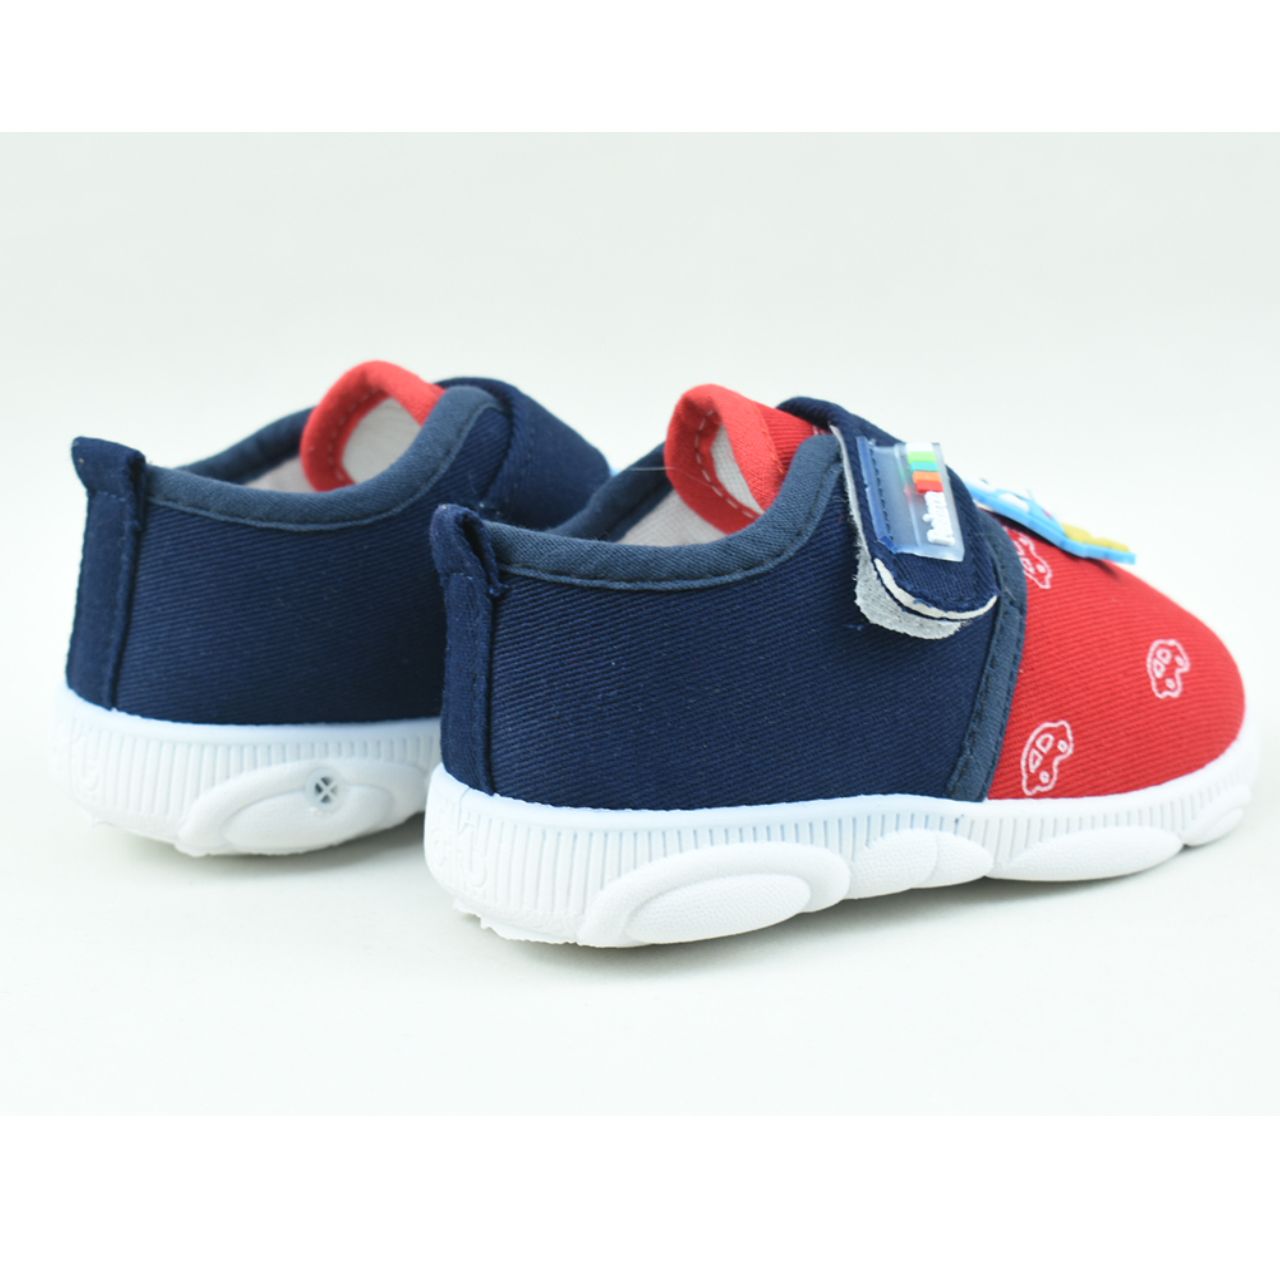 کفش نوزادی مدل قورباغه کد C-8233 -  - 9